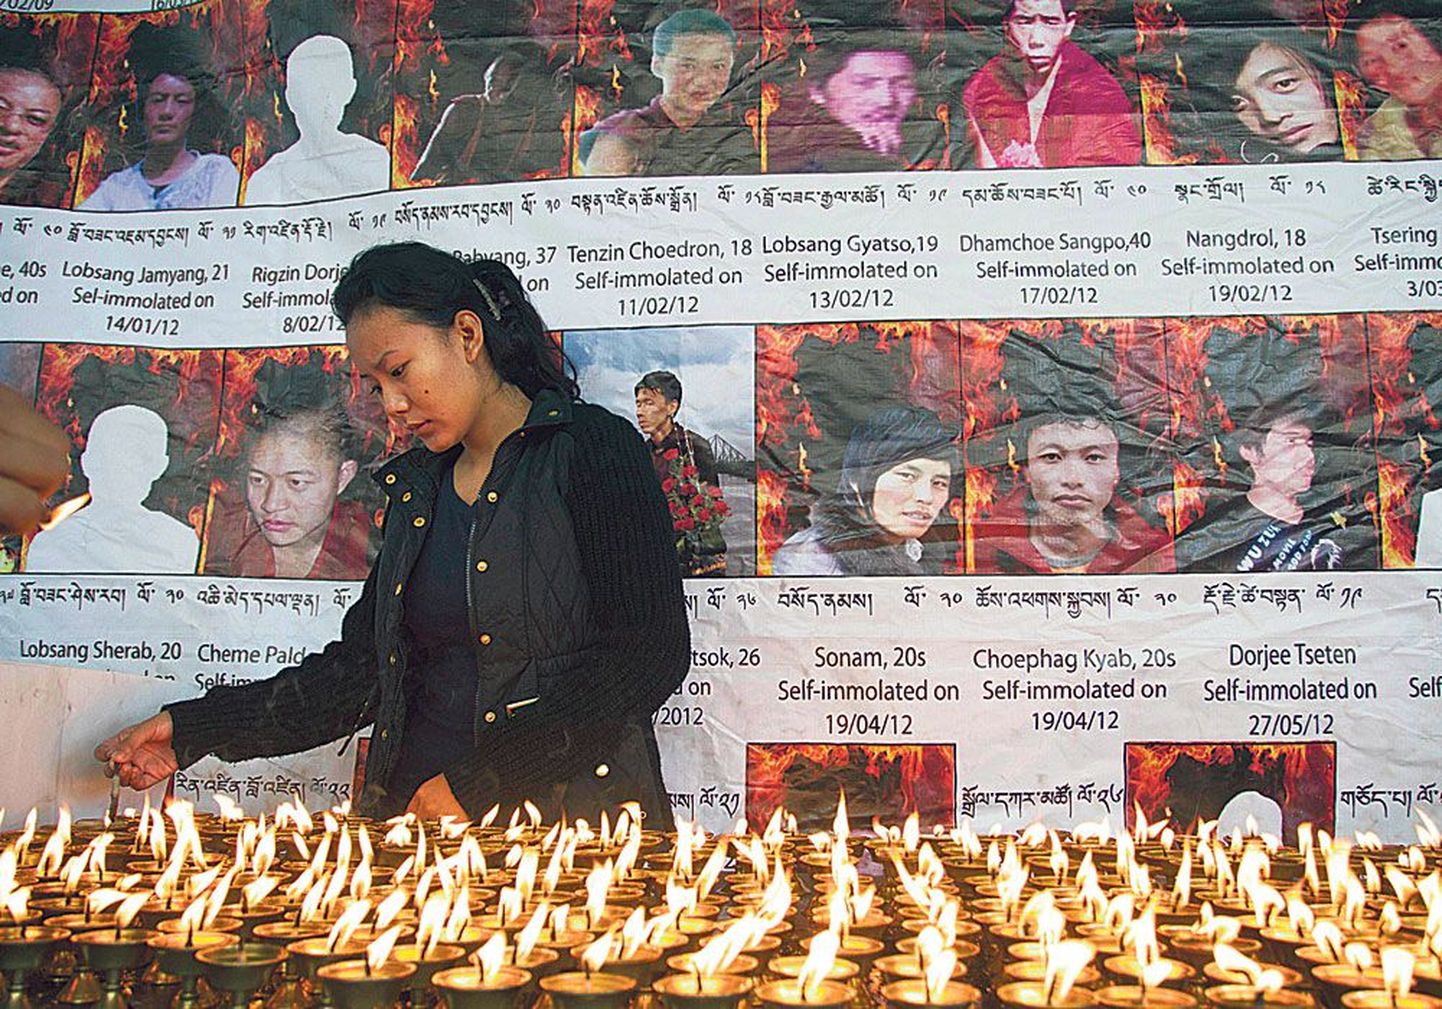 В городе Дарамсале, расположенном в Северной Индии, жительница Тибета, находясь в изгнании, зажигает свечи перед фотографиями тибетцев, которые подожгли себя в знак протеста против китайских властей.